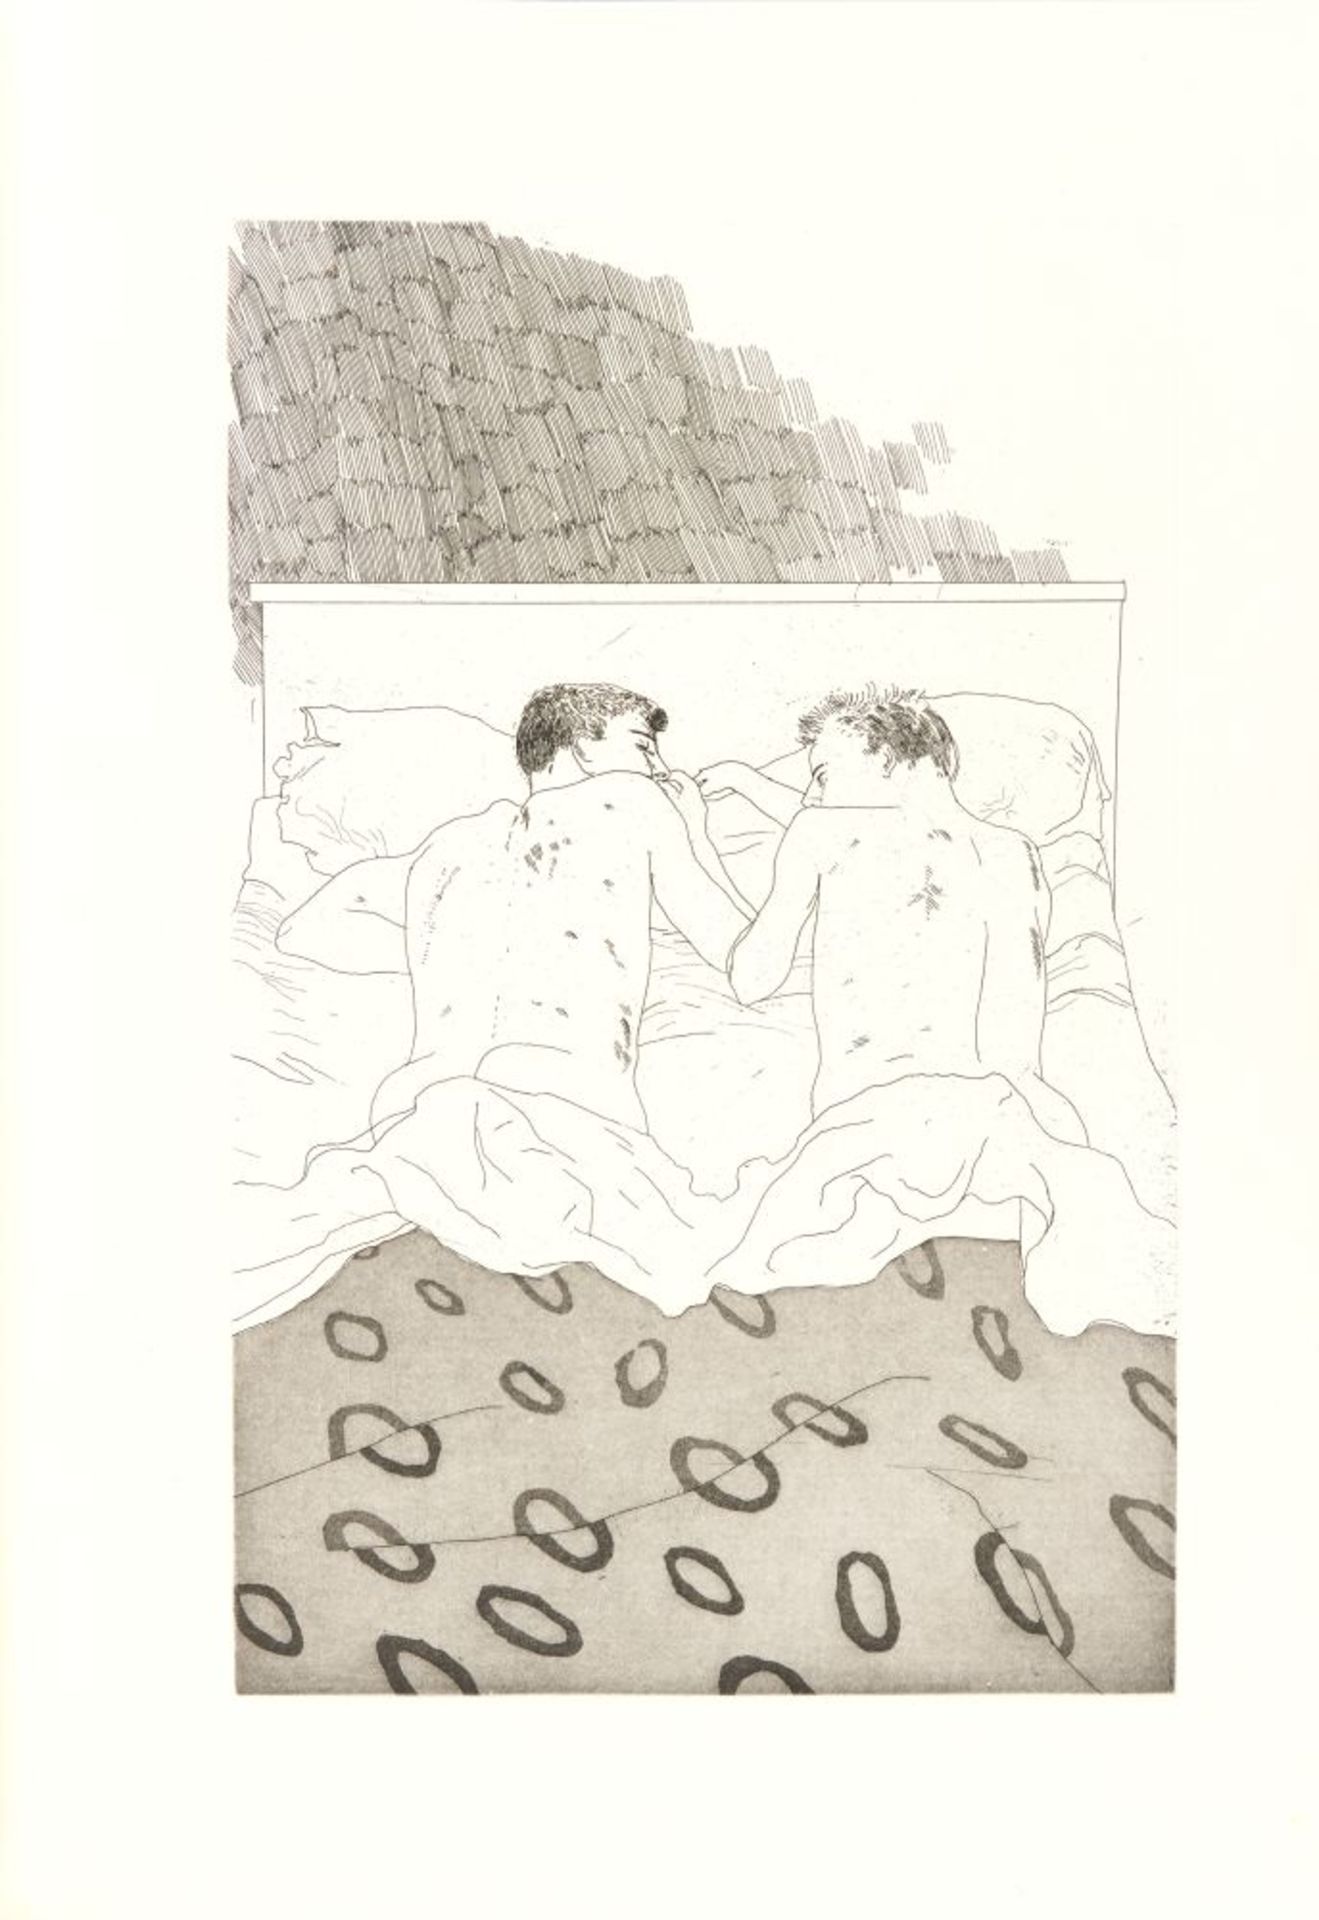 C. P. Cavafy / D. Hockney, Fourteen poems. Ldn 1967. - Eines von 250 Ex. der Edition B, sign. - Image 3 of 4